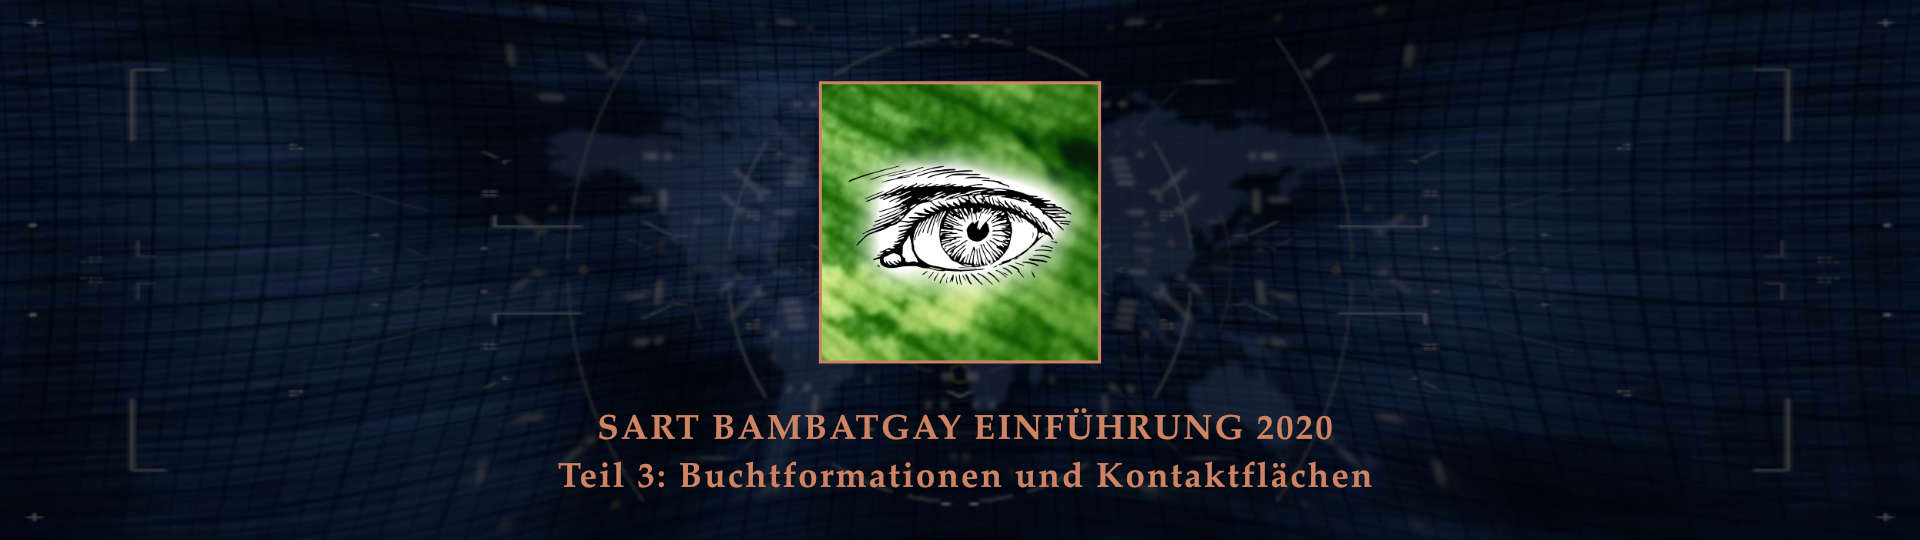 Sart bambatgay einfuehrung 2020 teil 03 buchtformationen und kontaktflaechen BANNER